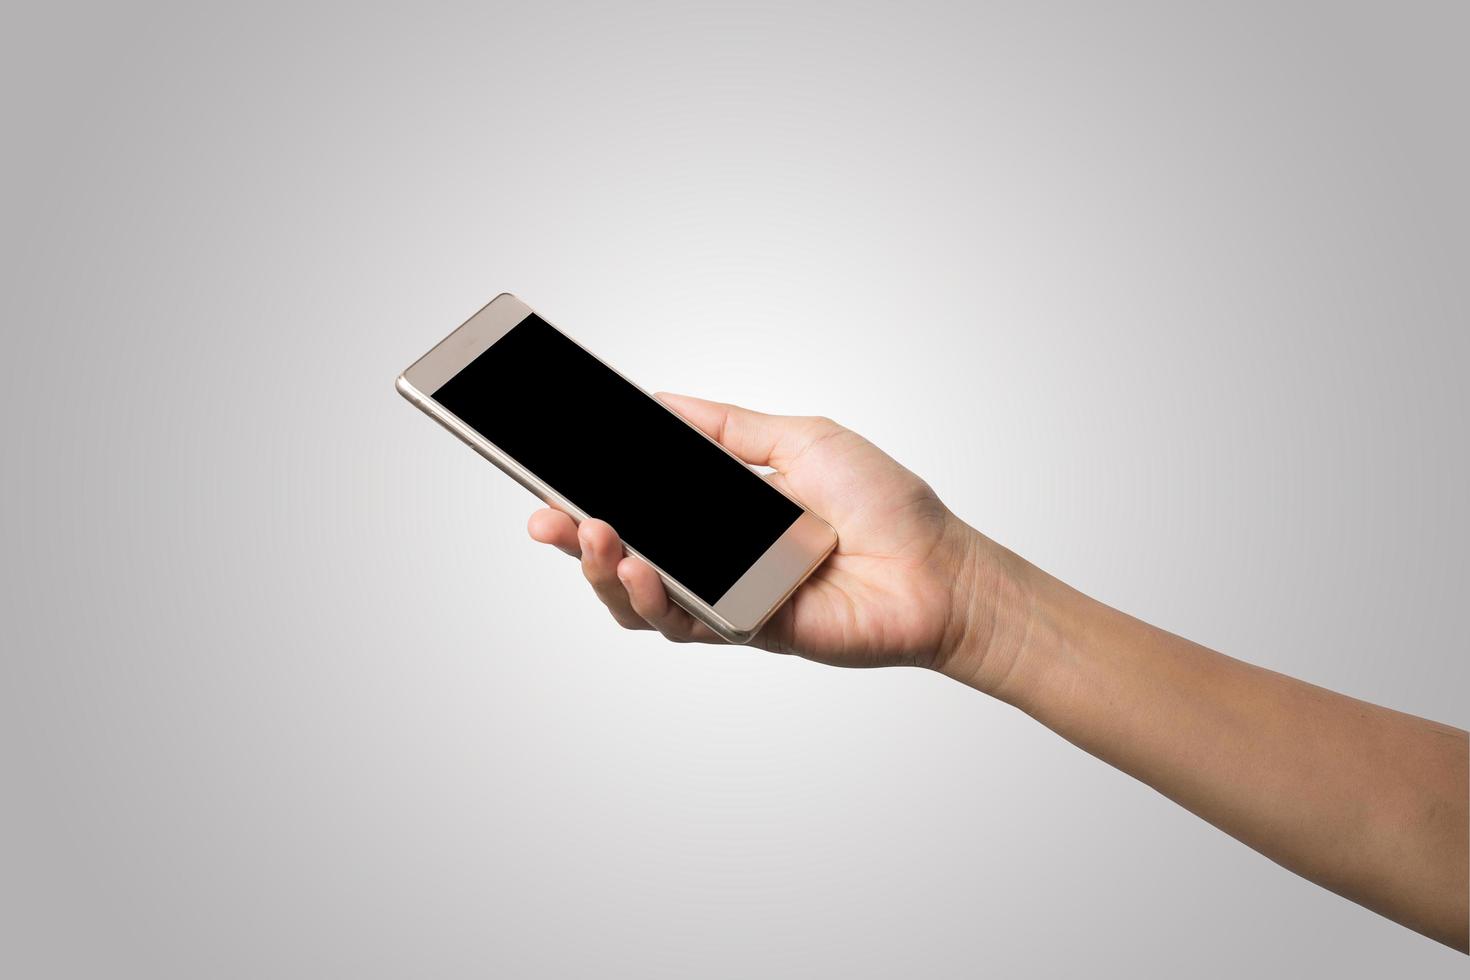 main de femme tenant écran blanc de téléphone intelligent photo